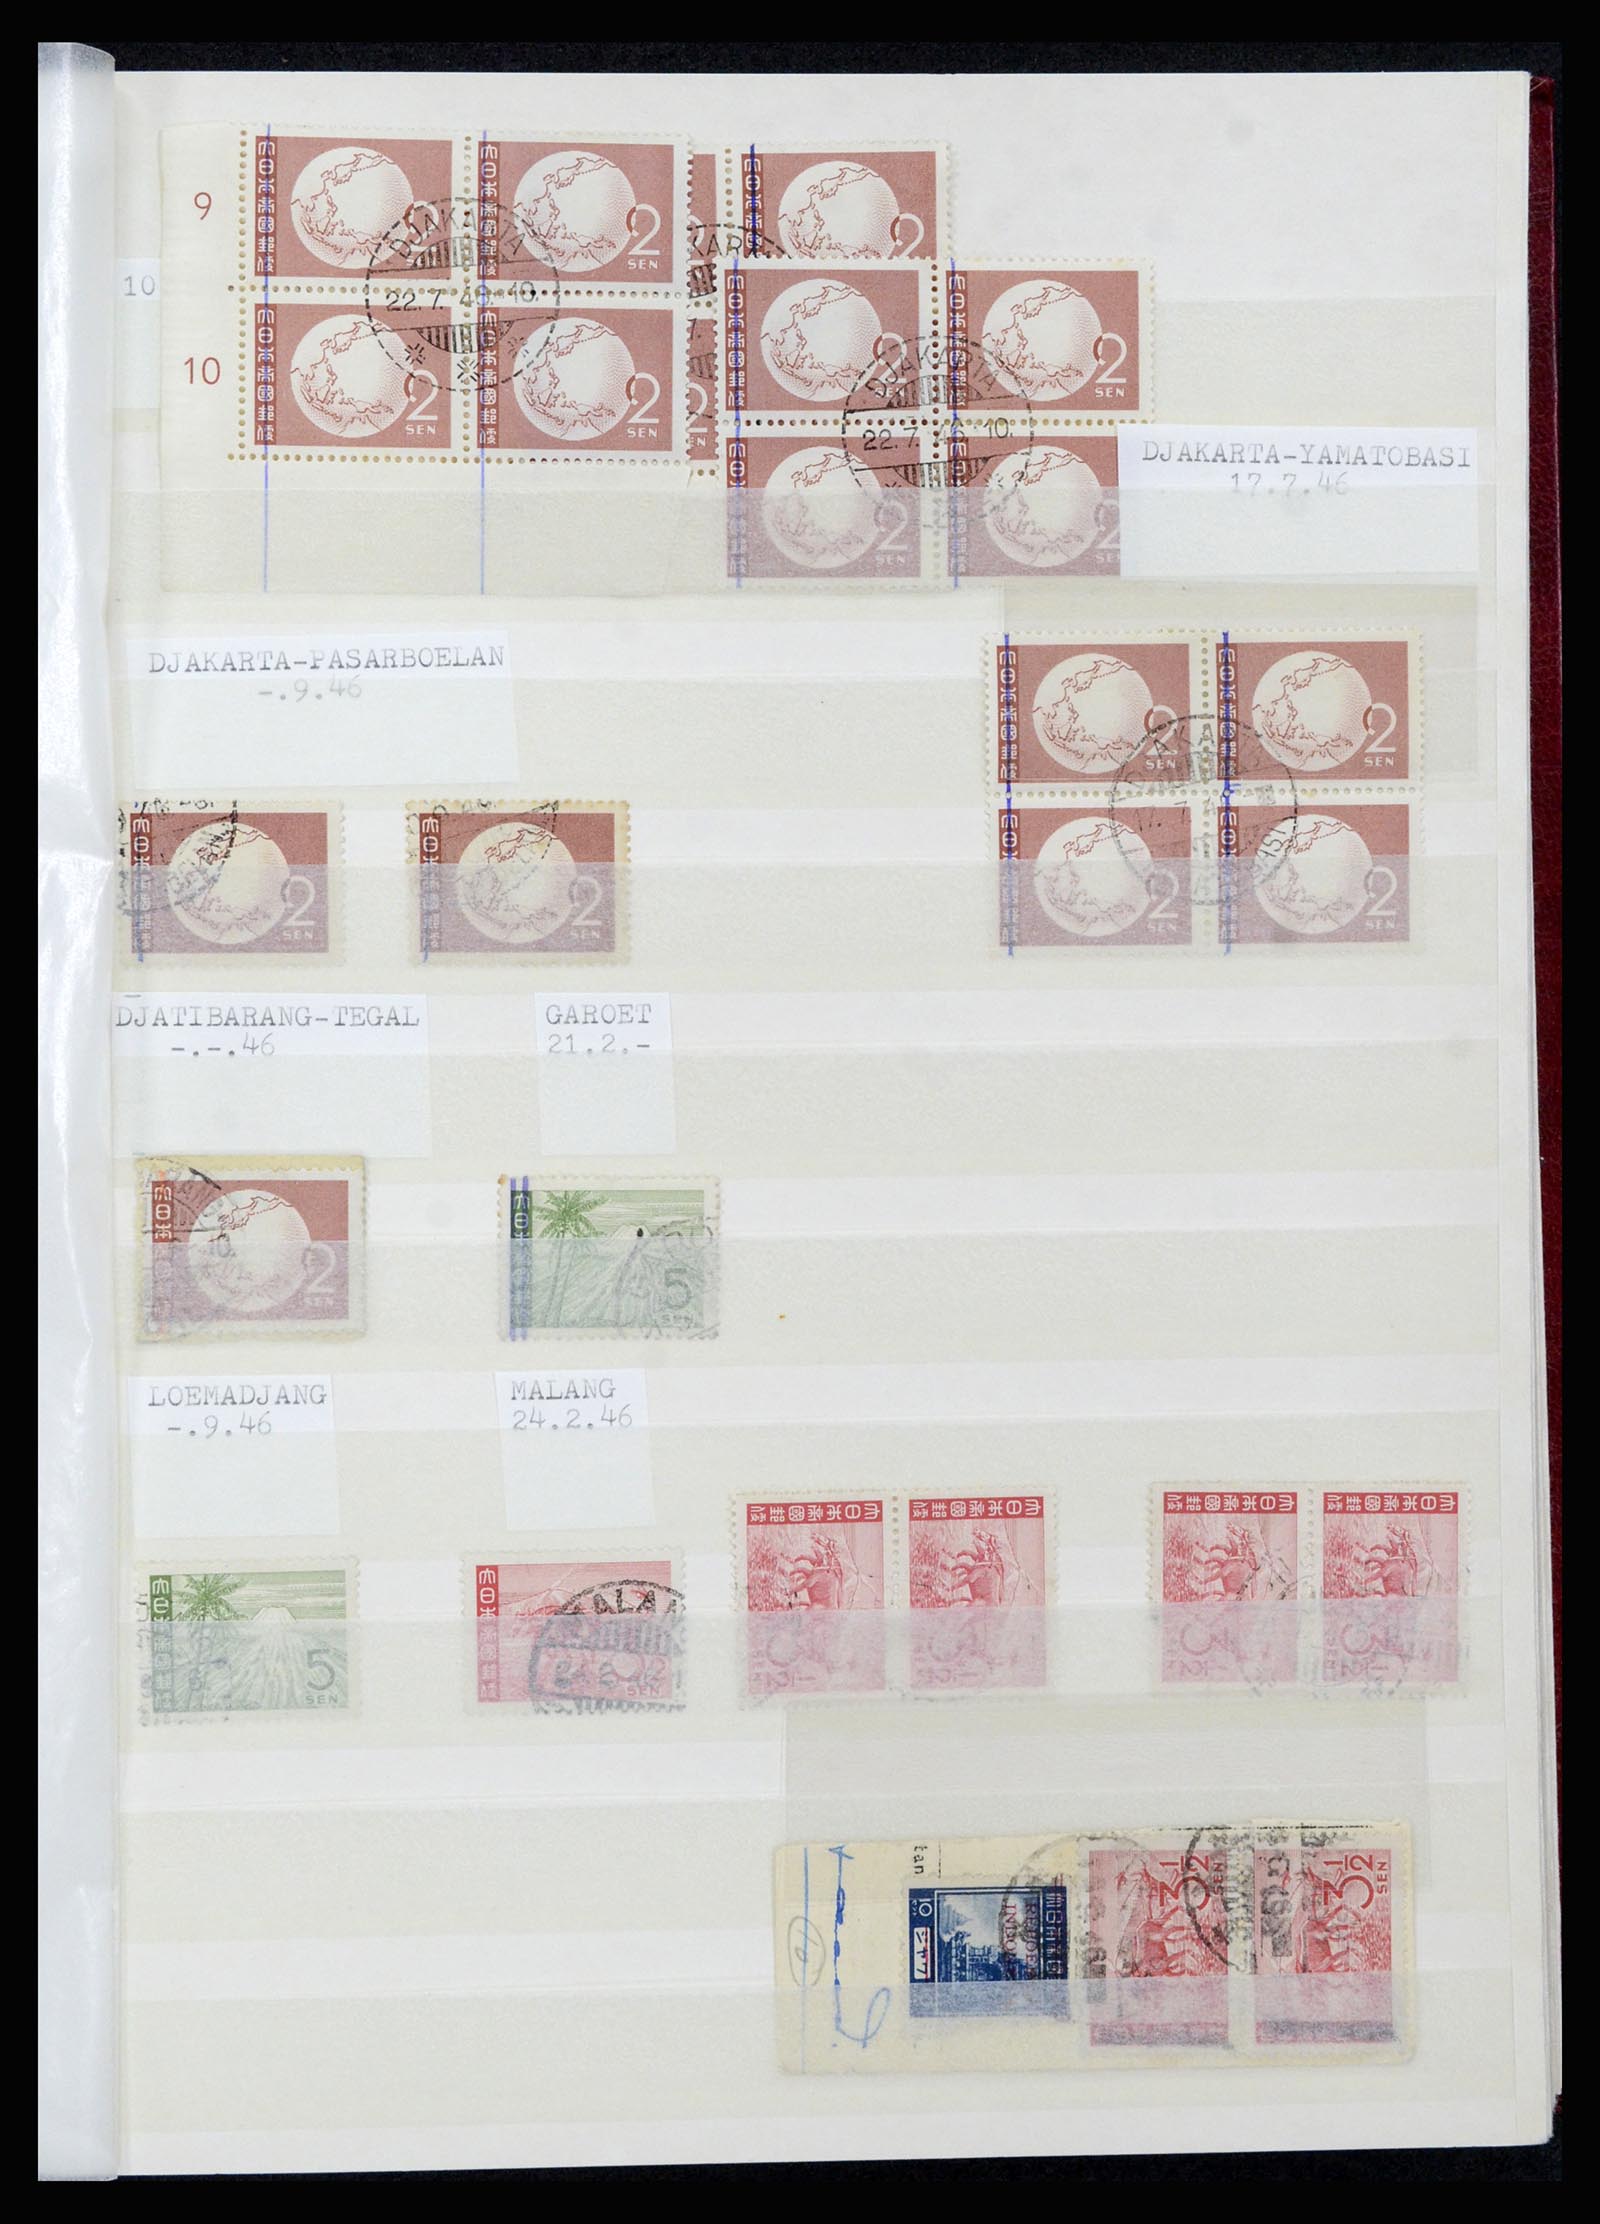 36742 034 - Stamp collection 36742 Dutch Indies interim period 1945-1949.